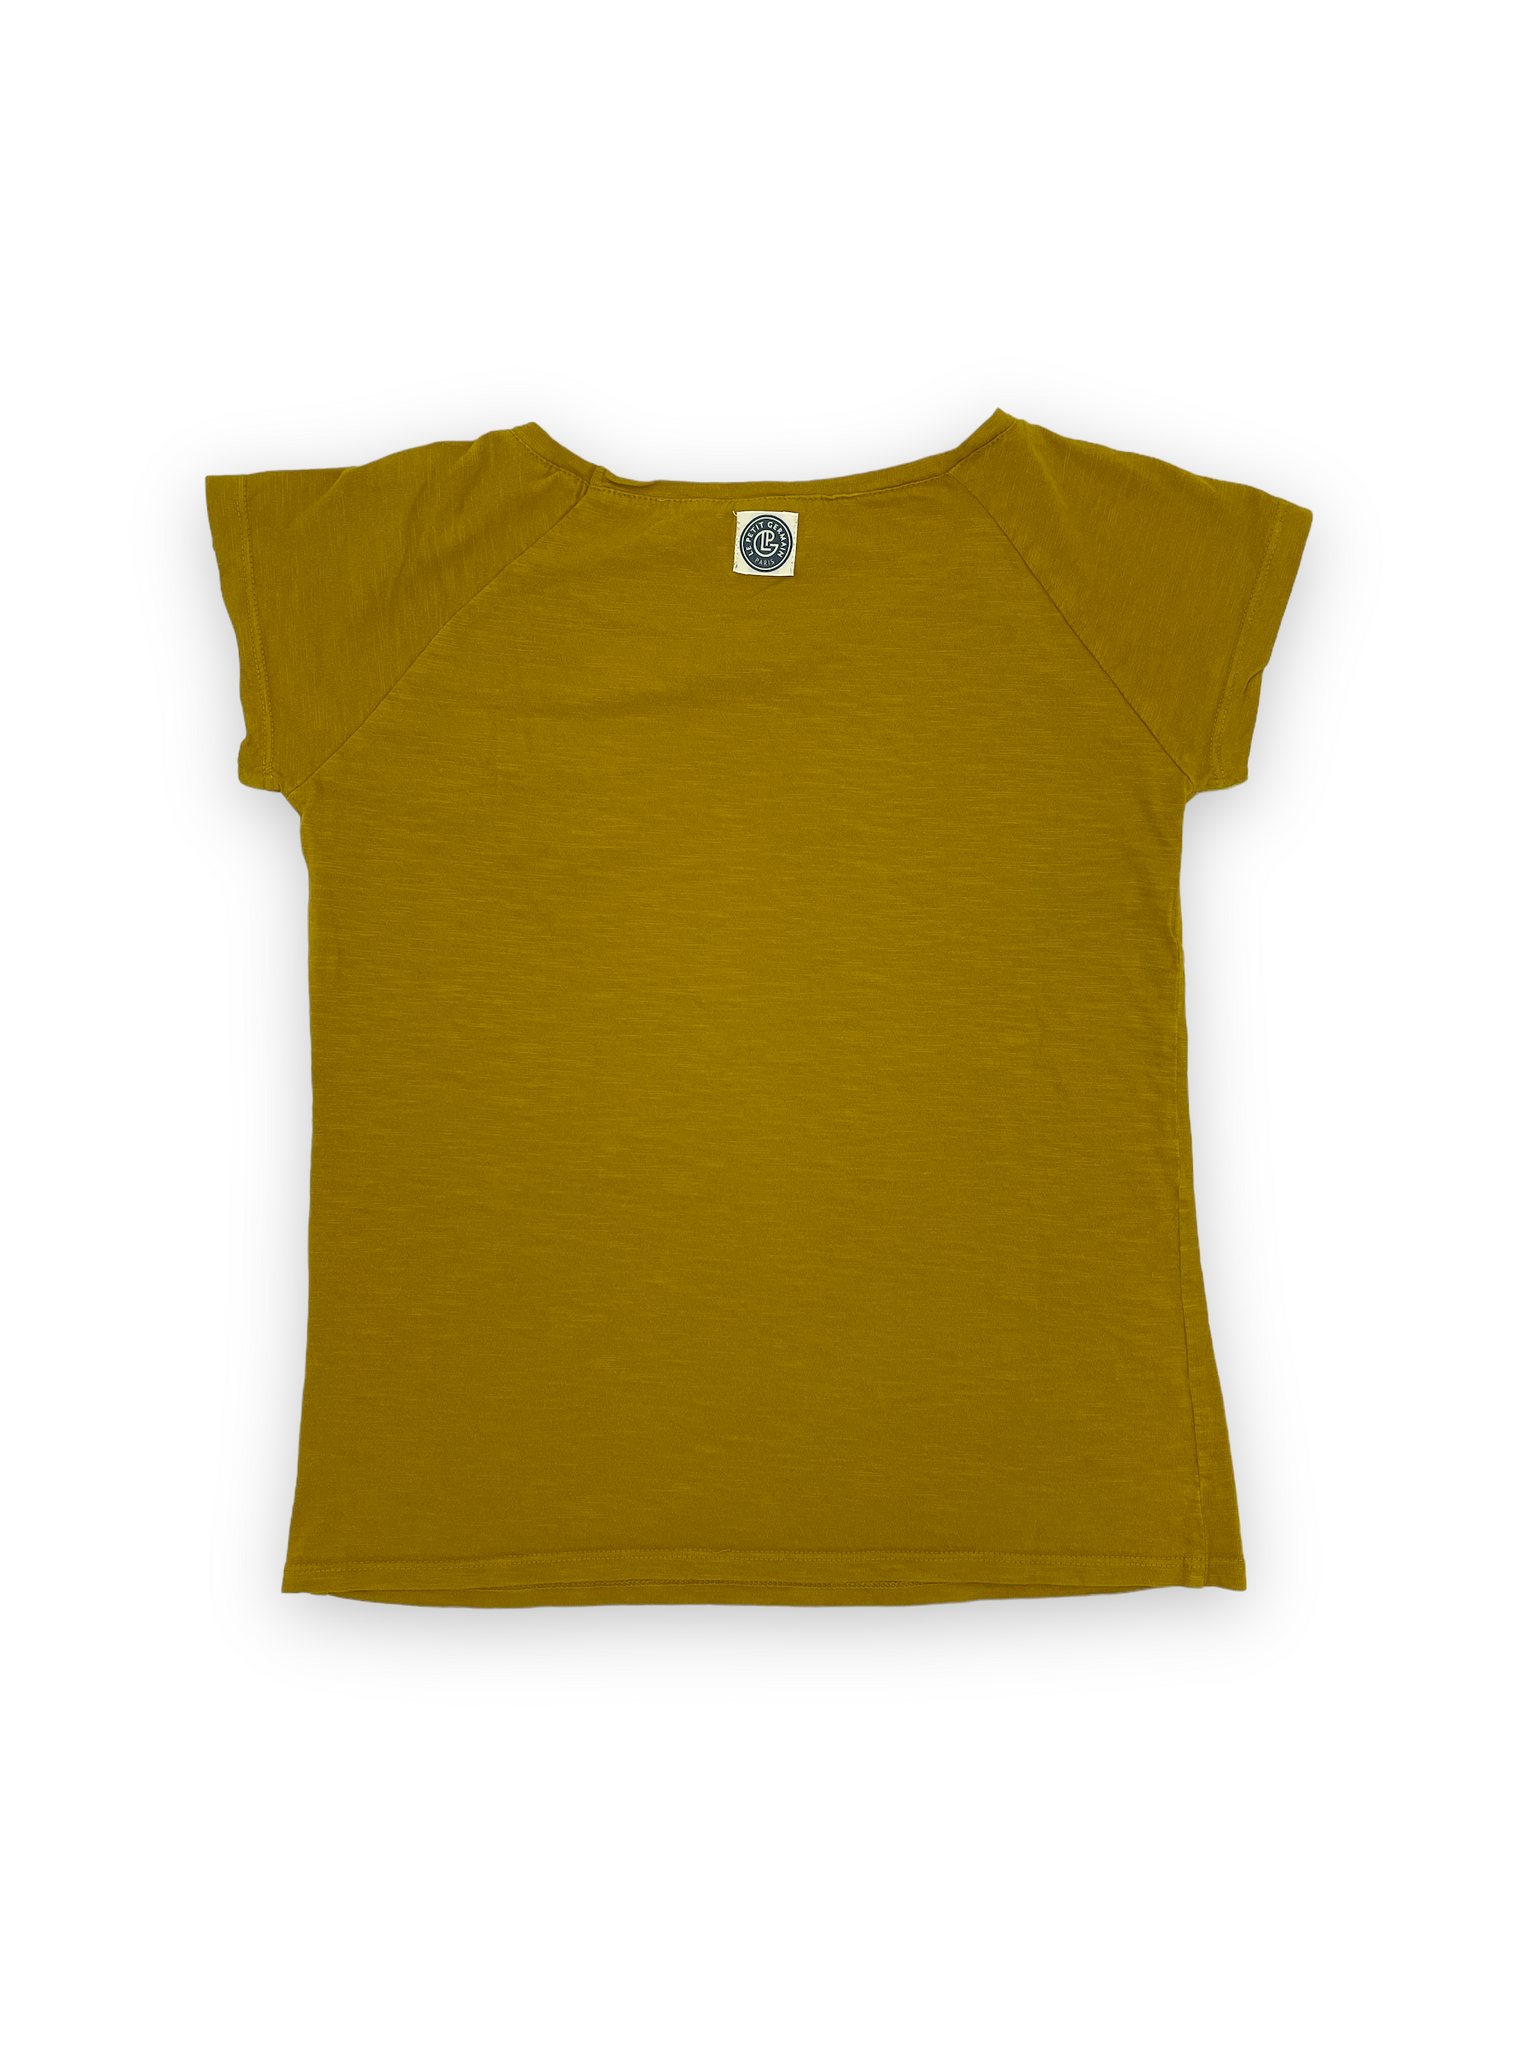 T-shirt Le petit germain 10 ans